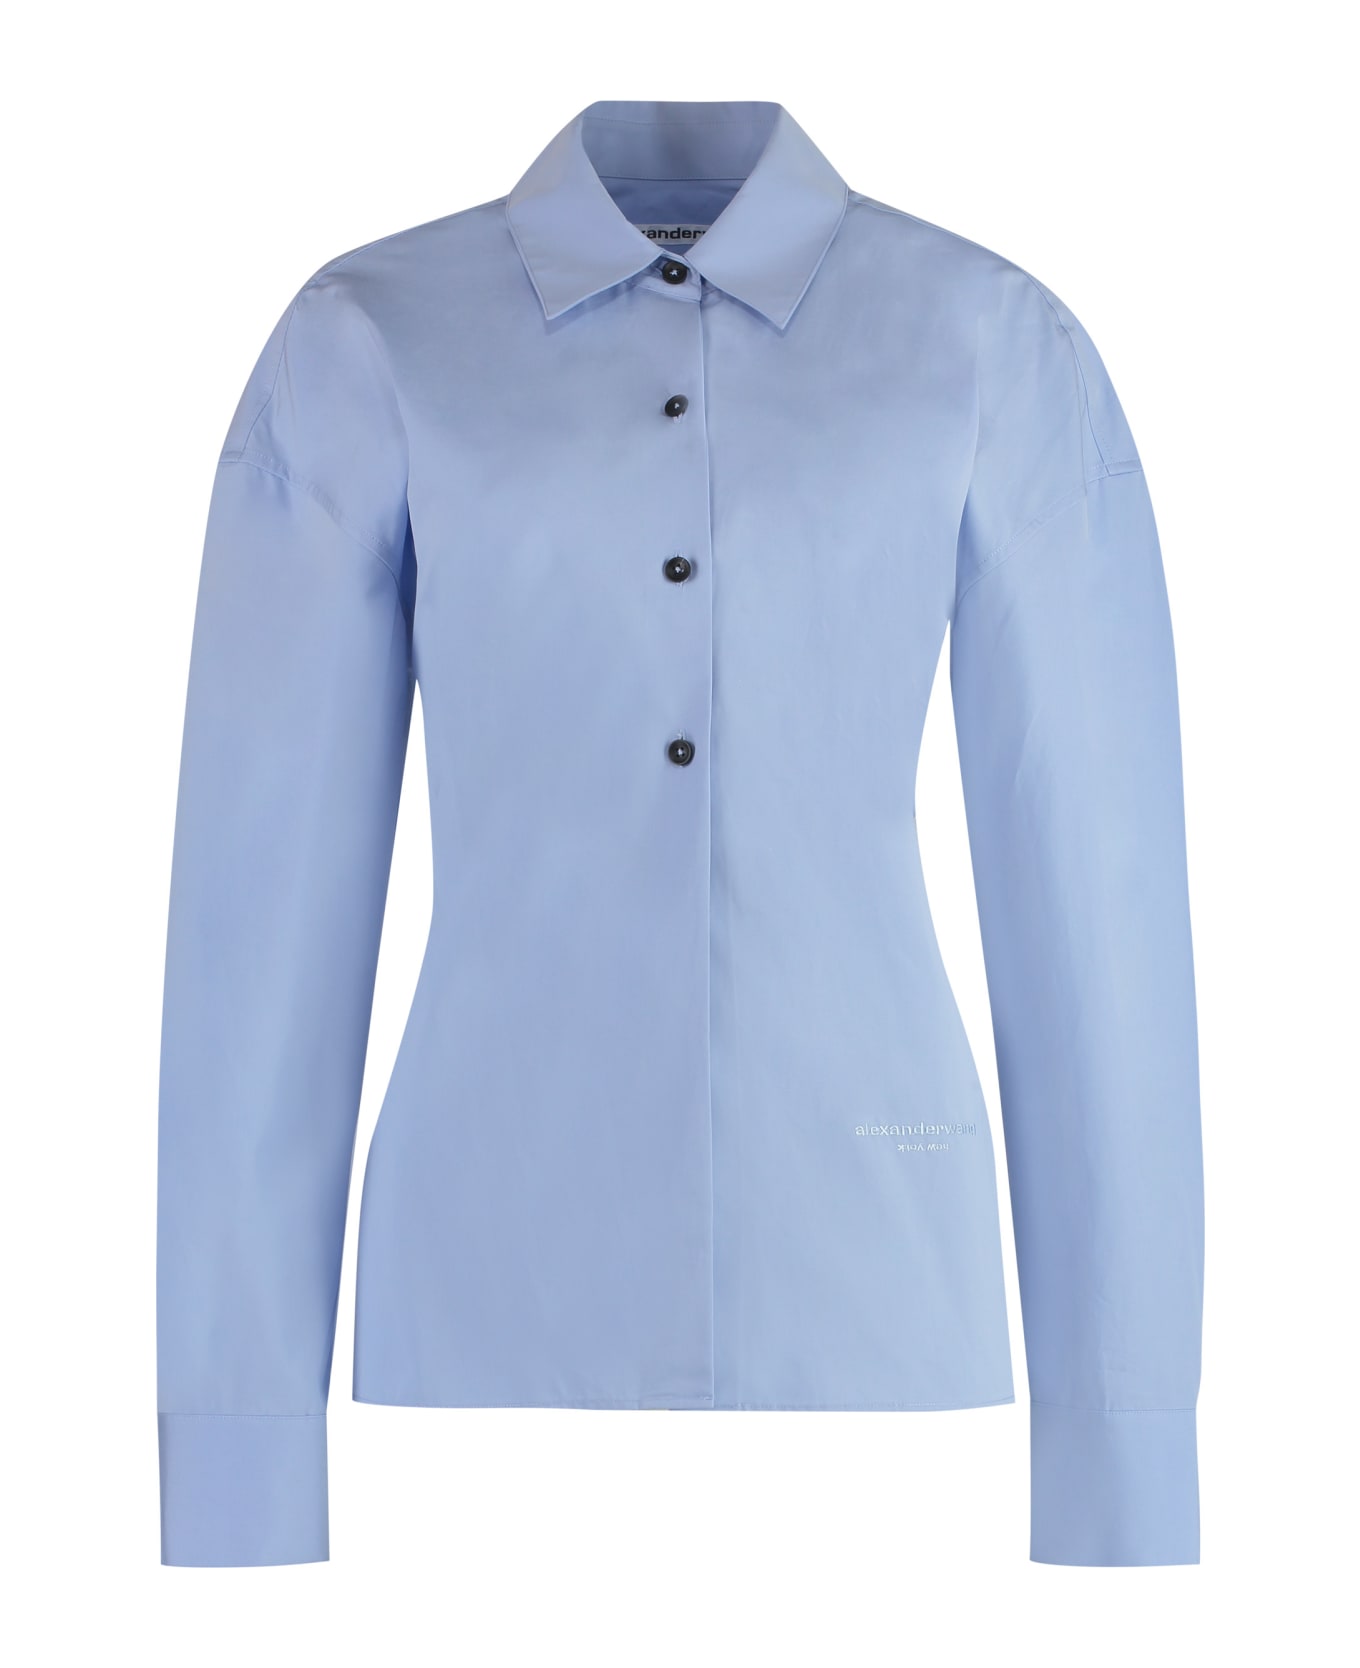 Alexander Wang Cotton Shirt - Light Blue